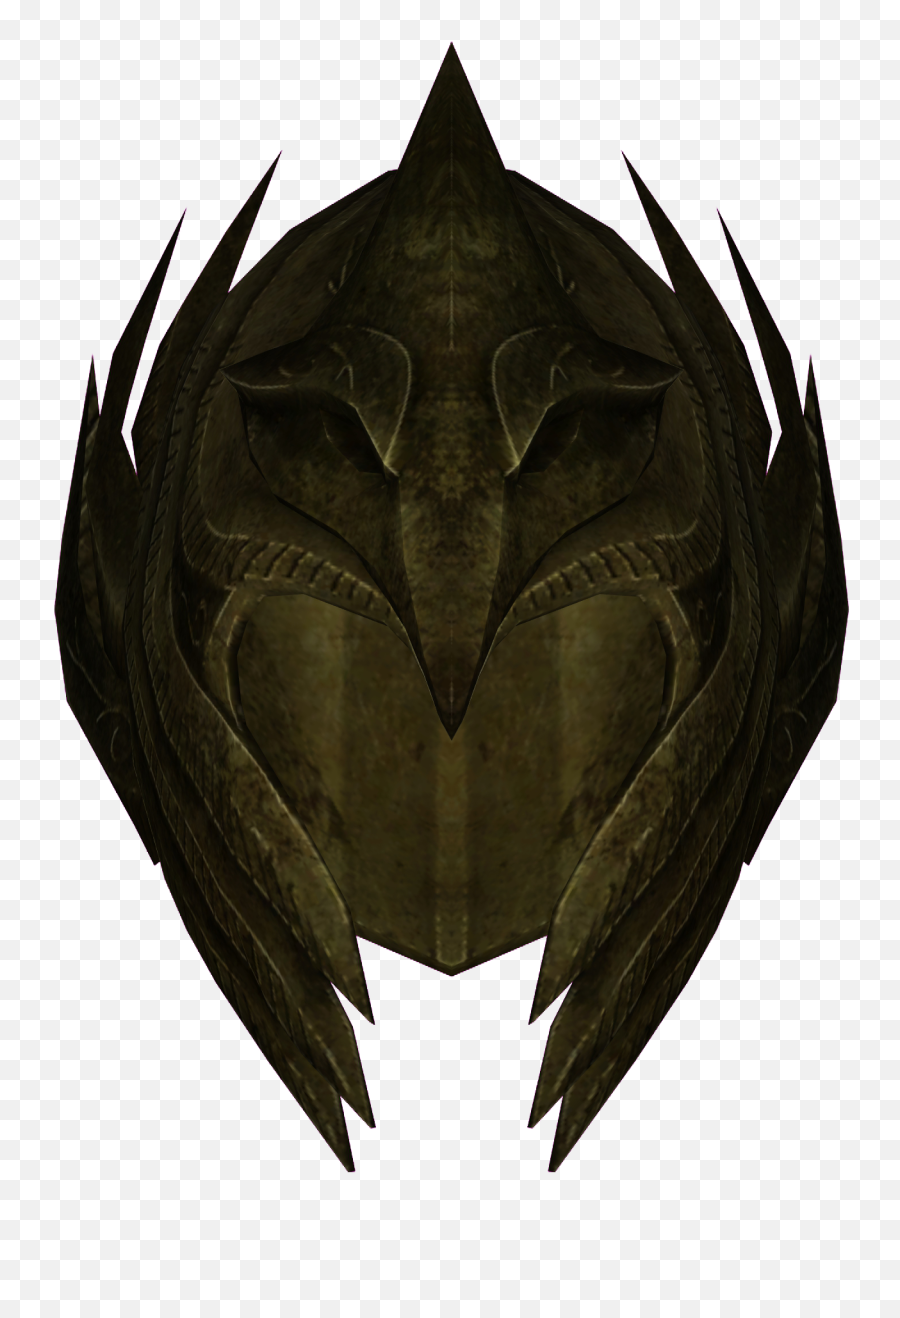 Download Elven Helmet - The Elder Scrolls Png Image With No The Elder Scrolls Skyrim,Elder Scrolls Png